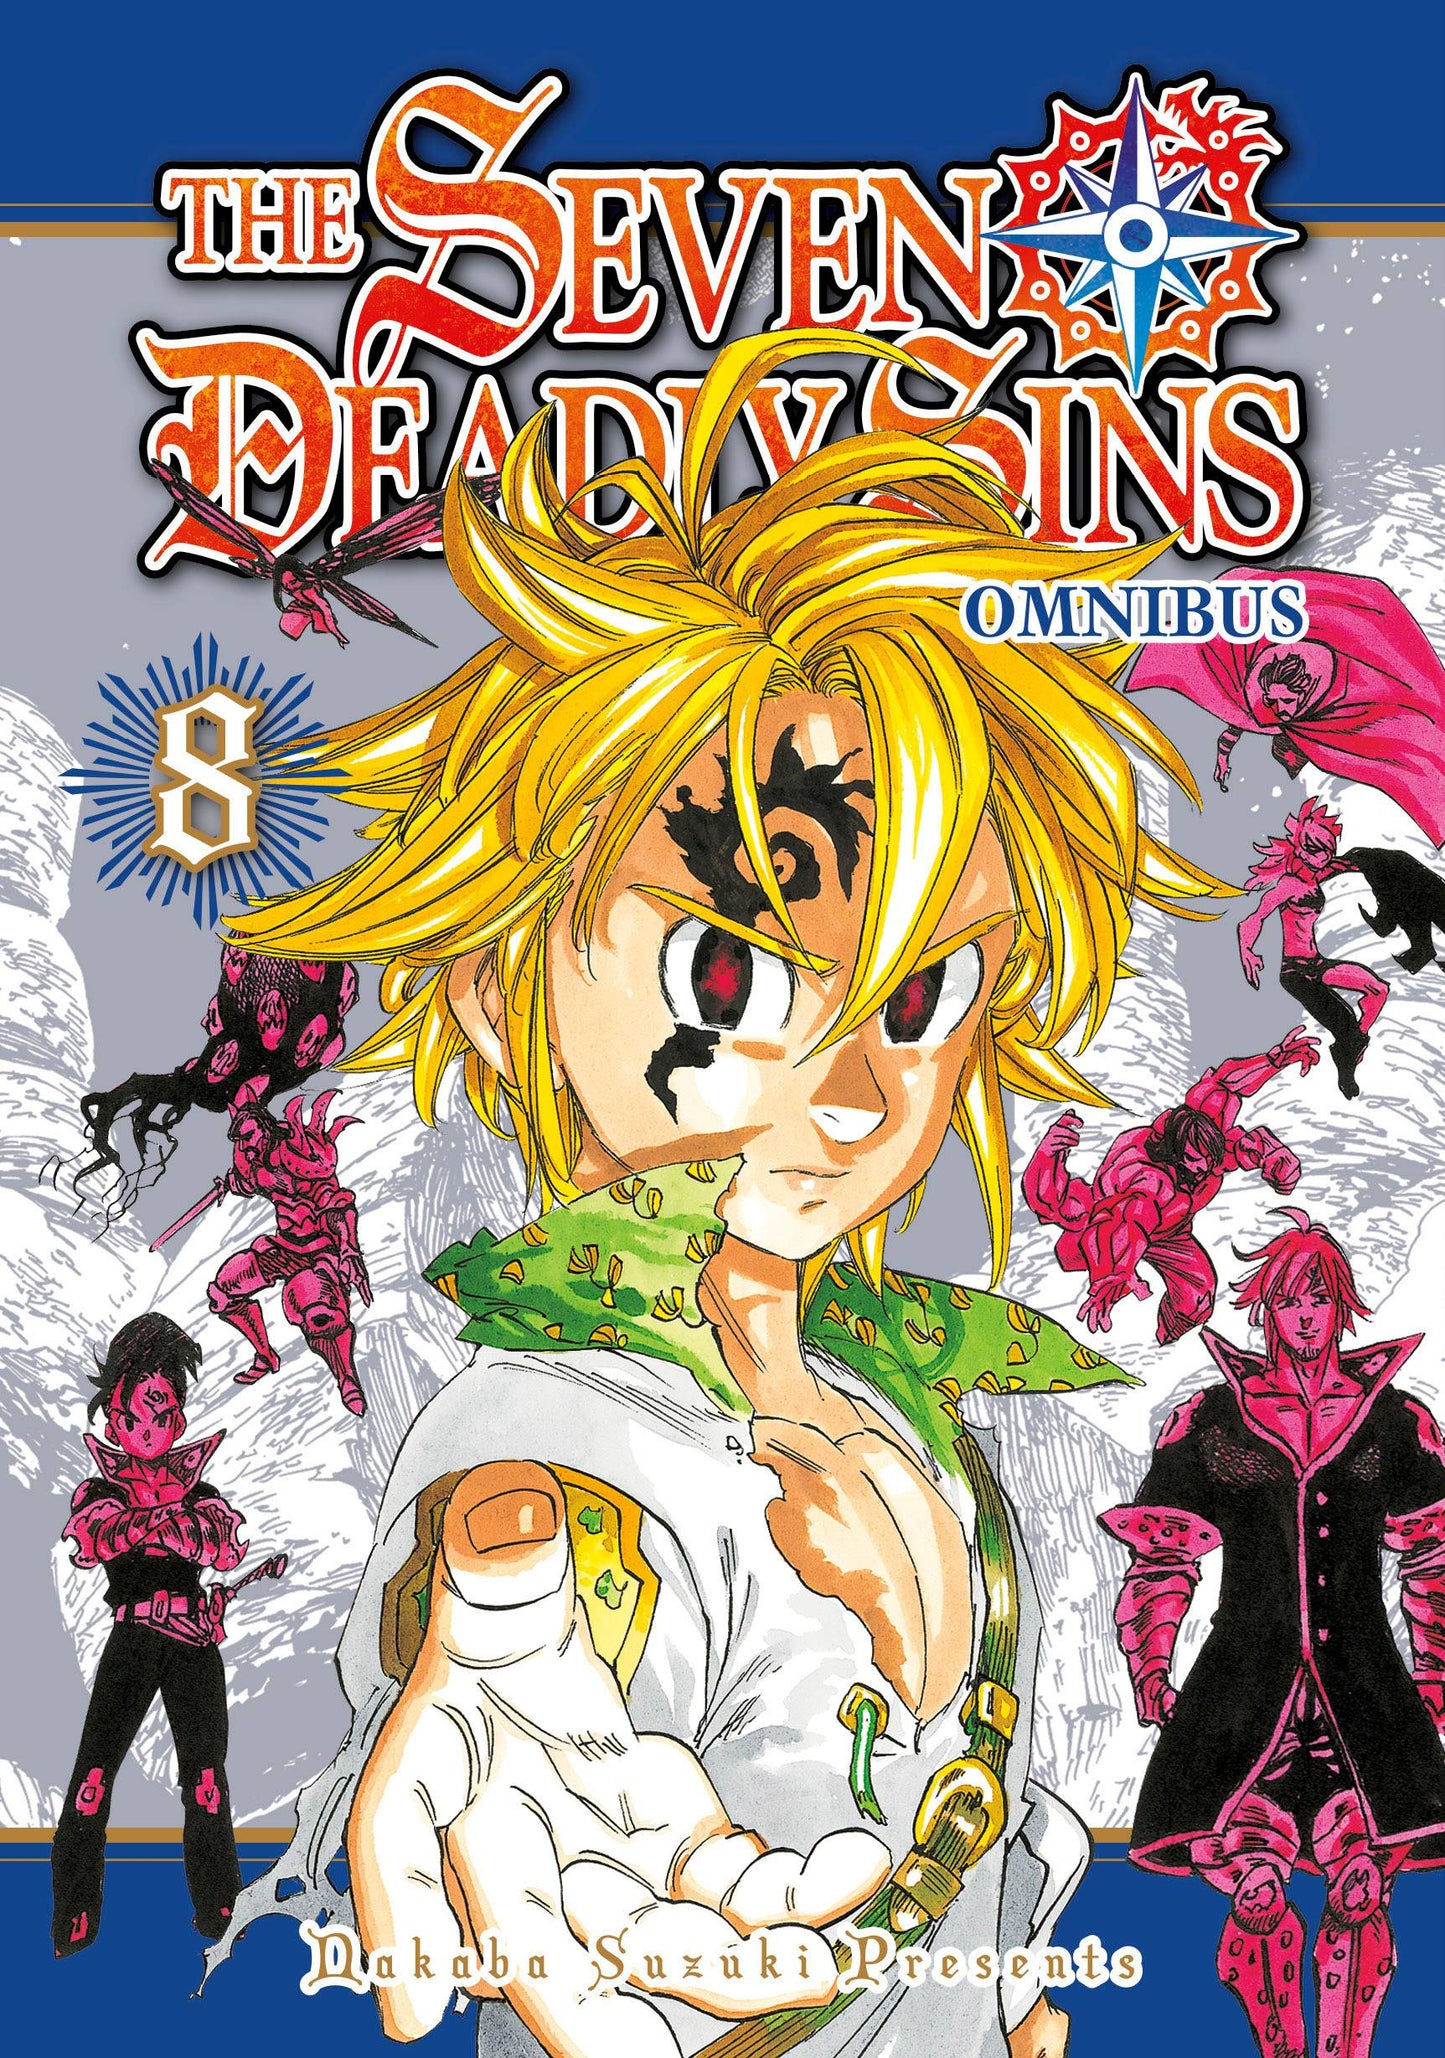 The One Stop Shop Comics & Games Seven Deadly Sins Omnibus Gn Vol 08 (C: 0-1-1) (12/7/2022) KODANSHA COMICS